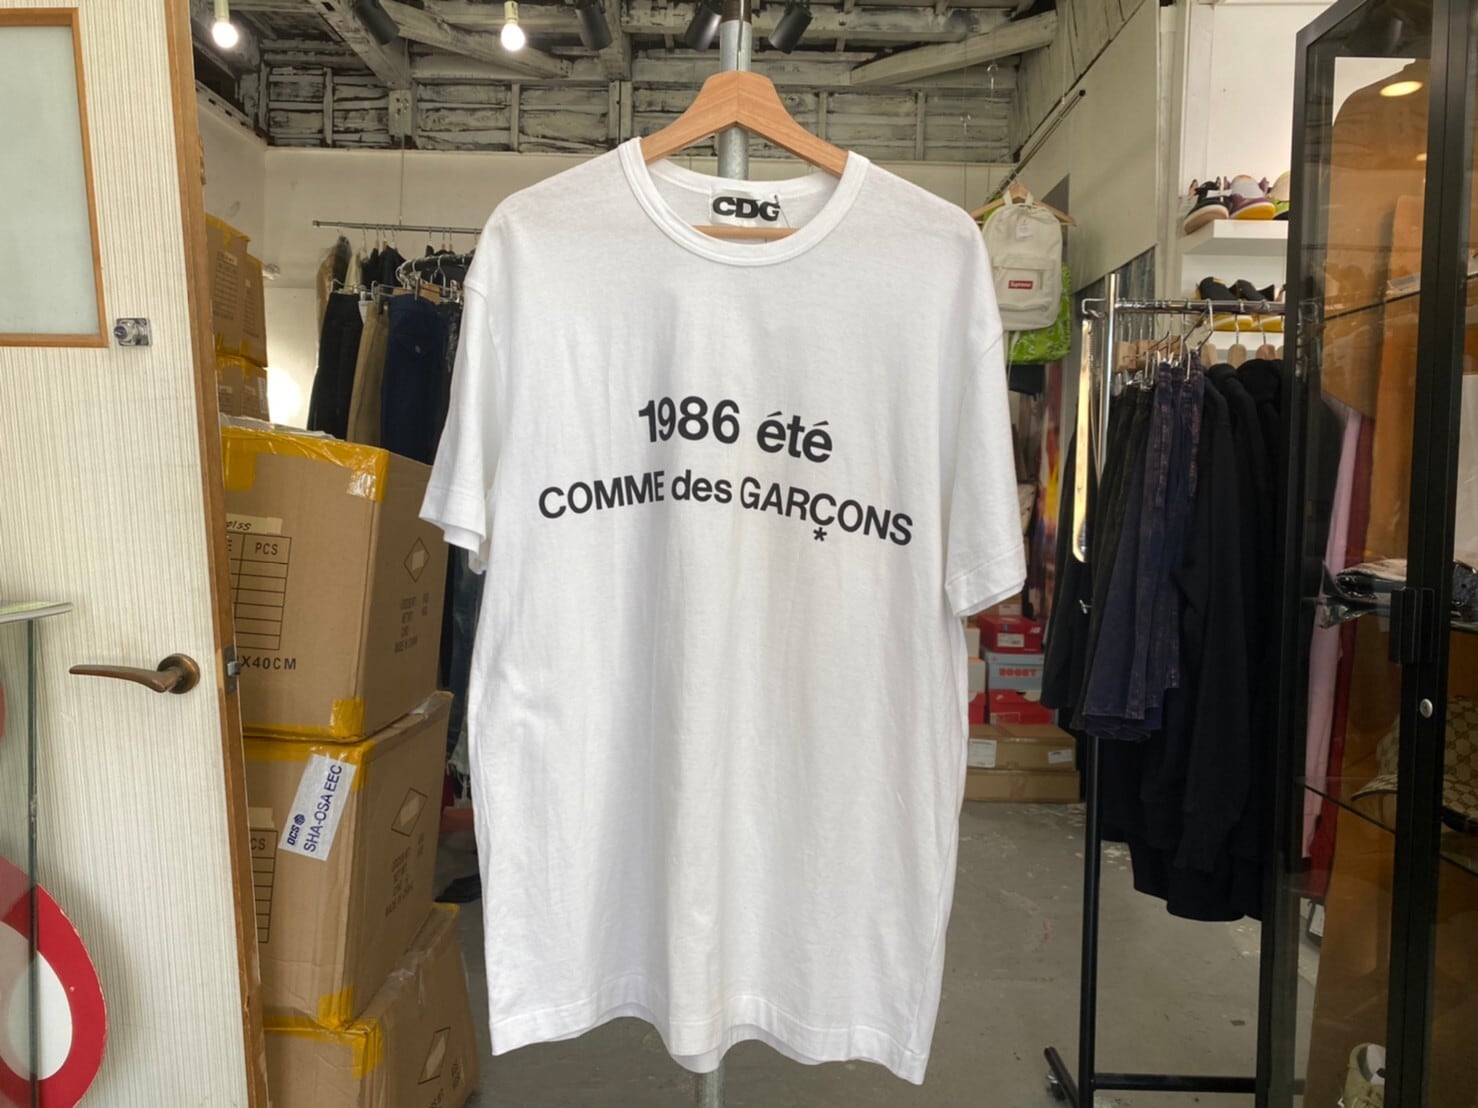 サイズXXL正規品新品未使用CDGcdgコムデギャルソン1986ete Tシャツ